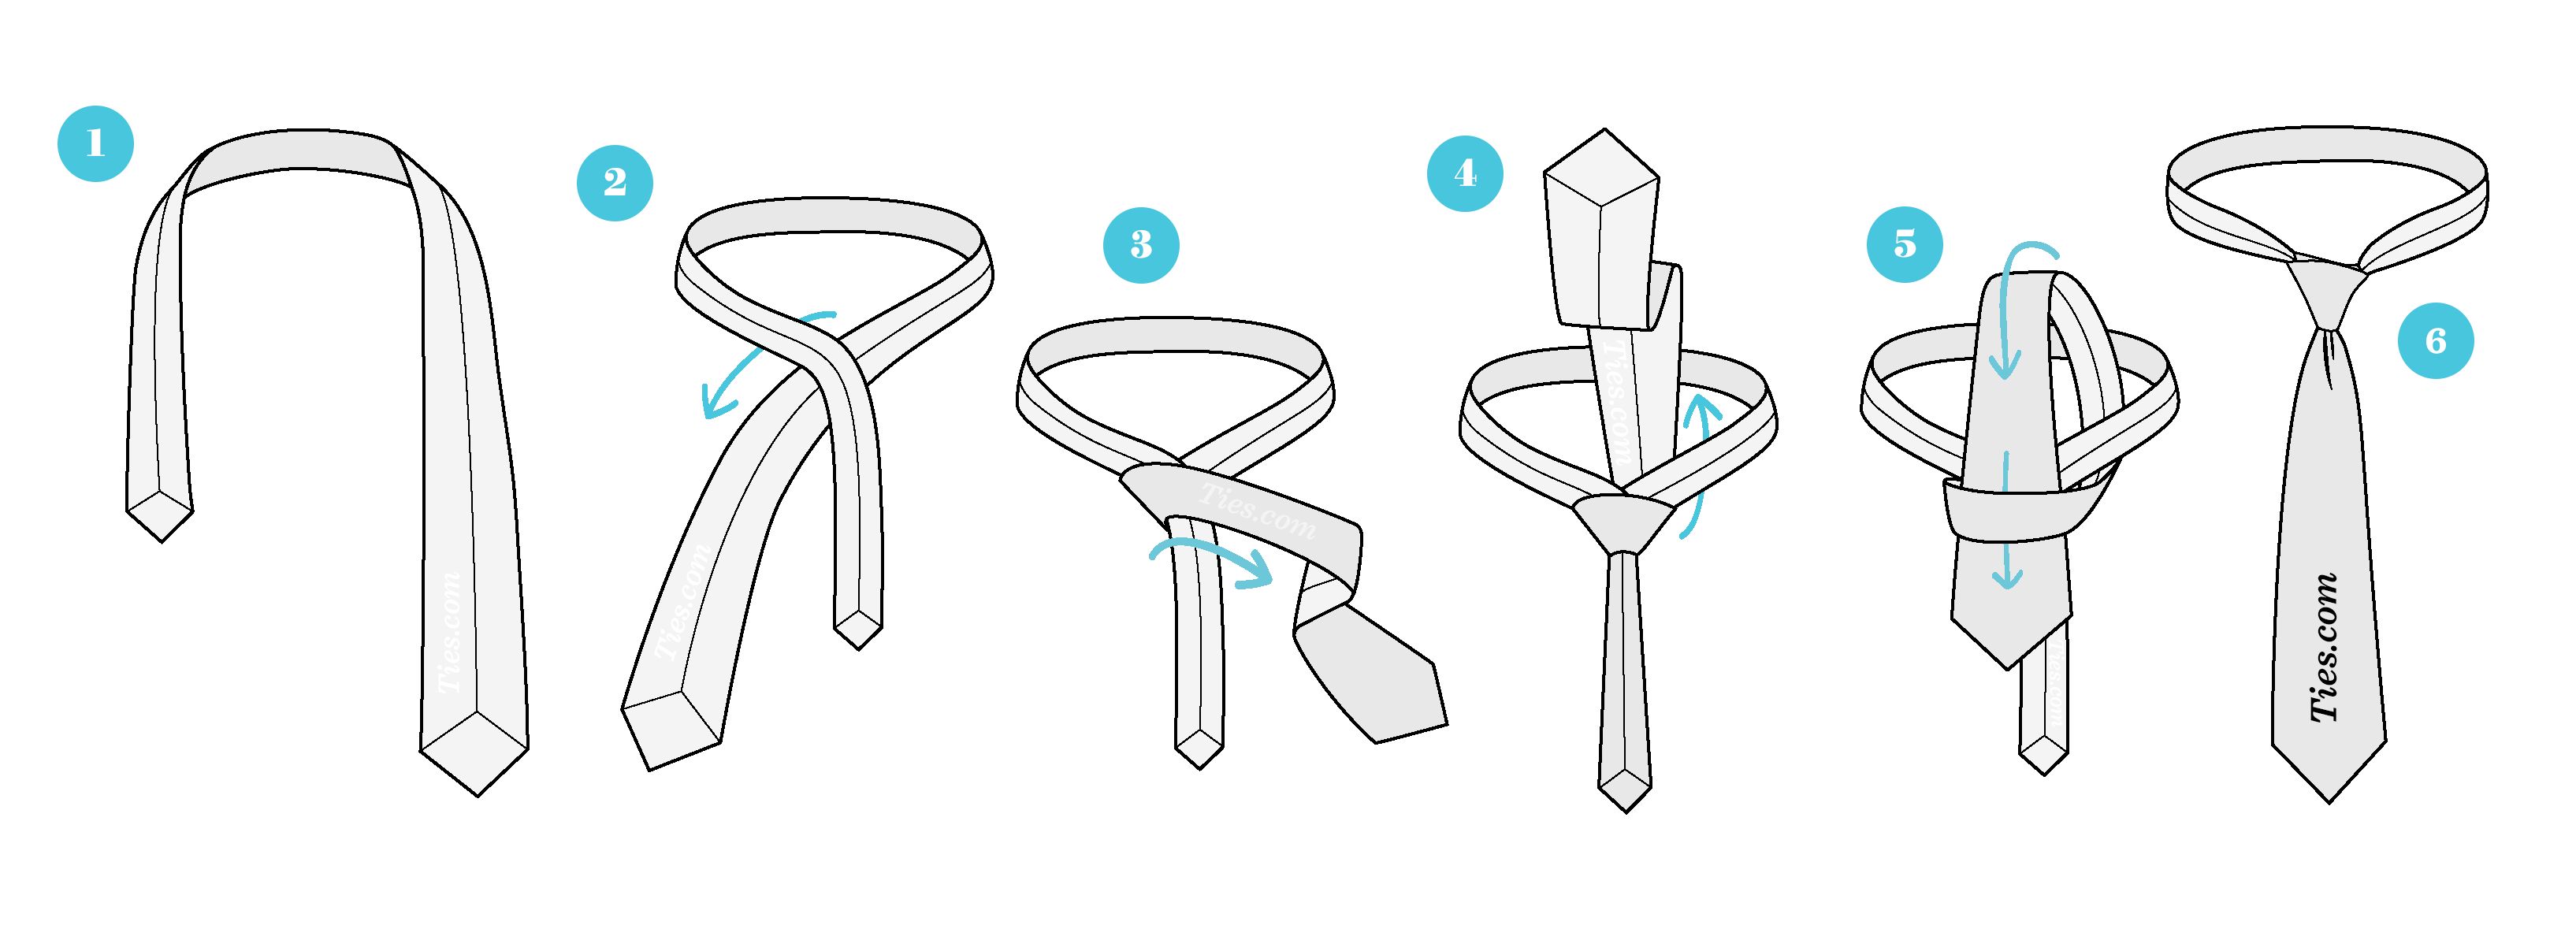 Завязывание галстука в картинках. Галстук схема завязки завязывания. Схема завязывания галстука простой узел. Завязать галстук самый простой узел. Схема завязывания галстука мужского.